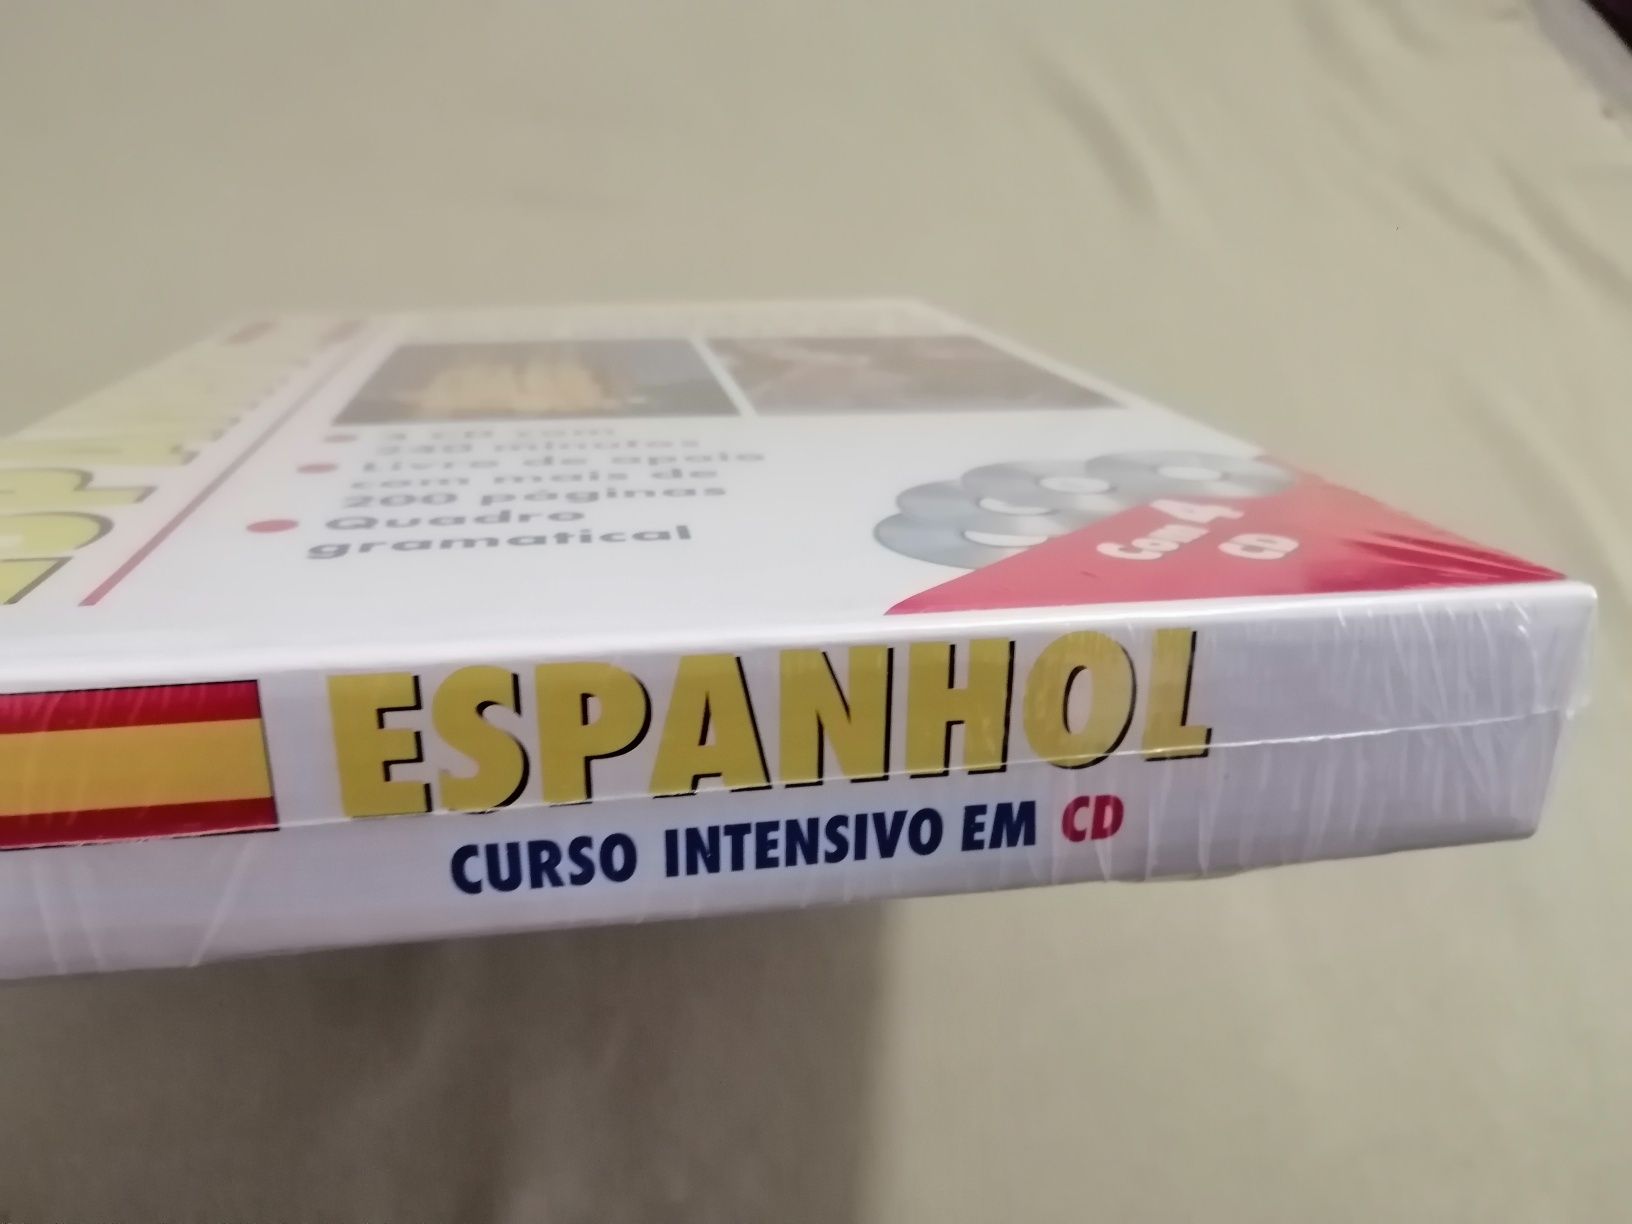 Espanhol, curso intensivo em CD